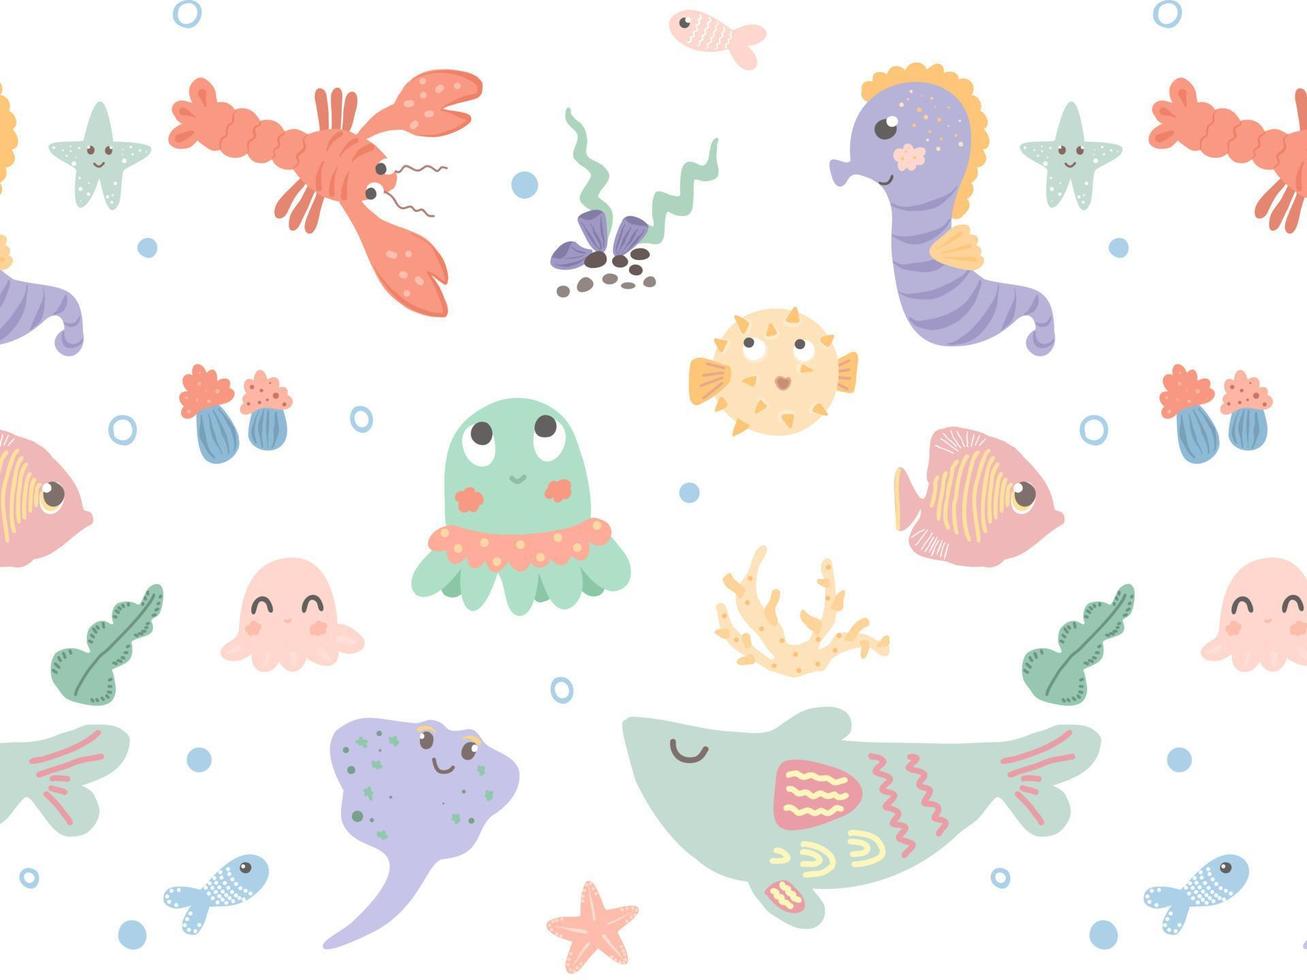 patrón del mundo submarino. personajes de dibujos animados bajo el agua. ballena, pez, estrella de mar, pulpo. patrón dibujado a mano para textiles para niños, papeles pintados, telas. vector